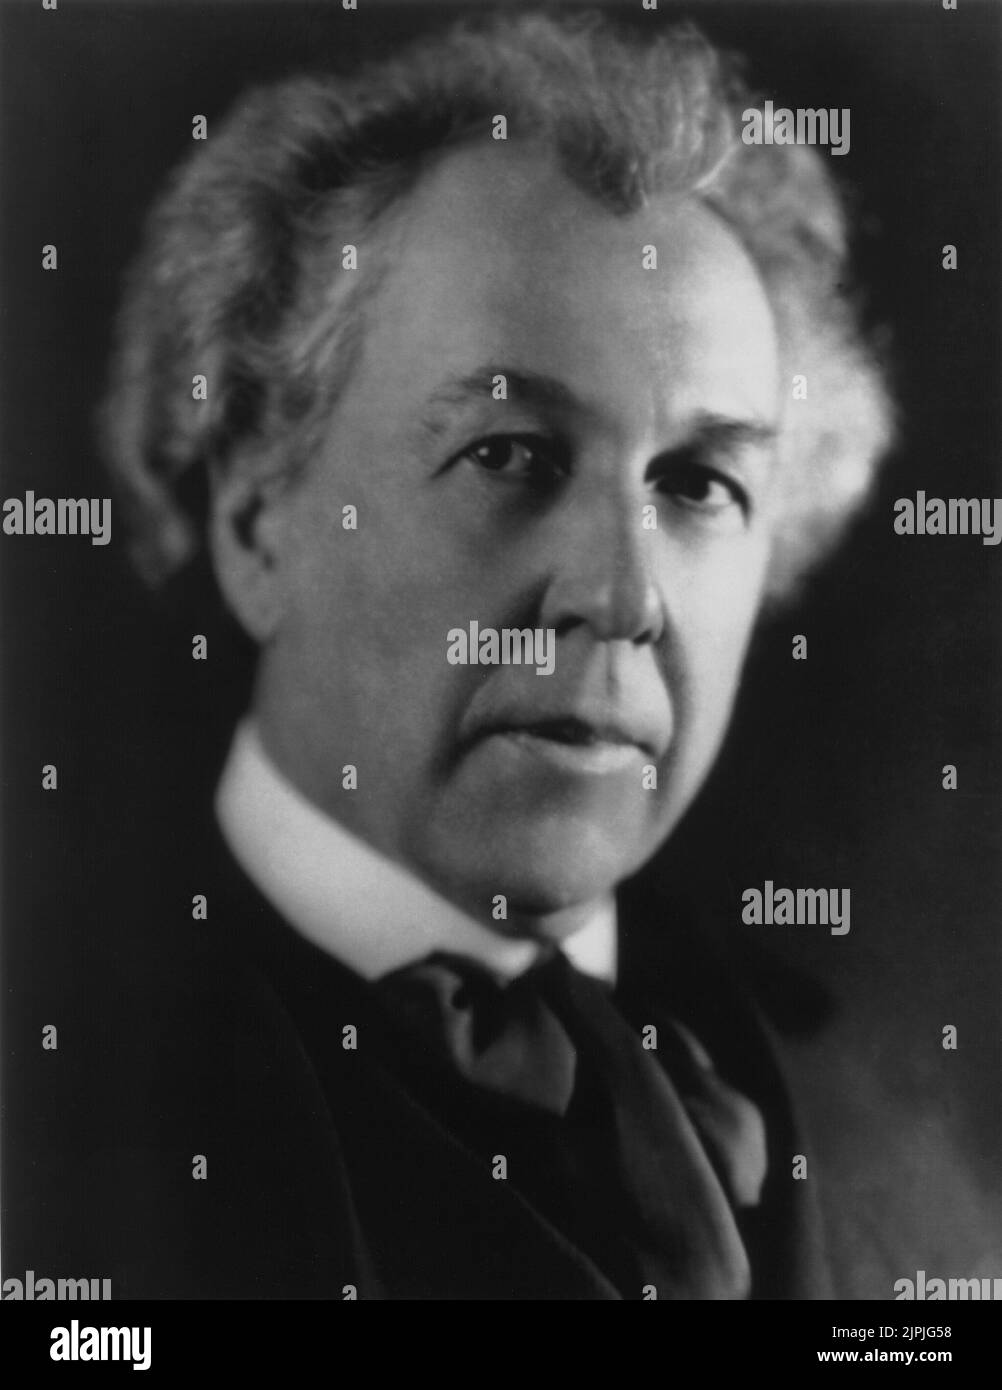 1923 , dezember , USA : der berühmte amerikanische Architekt Frank Lloyd WRIGHT ( 1869 - 1959 ) , Schöpfer des Guggenheim Museums in New York ( 1946 - 1959 ). - ARCHITETTO - ARCHITETTURA - Portrait - ritratto - Krawatte - Cravatta - Schal - weißes Haar - capelli bianchi ---- Archivio GBB Stockfoto